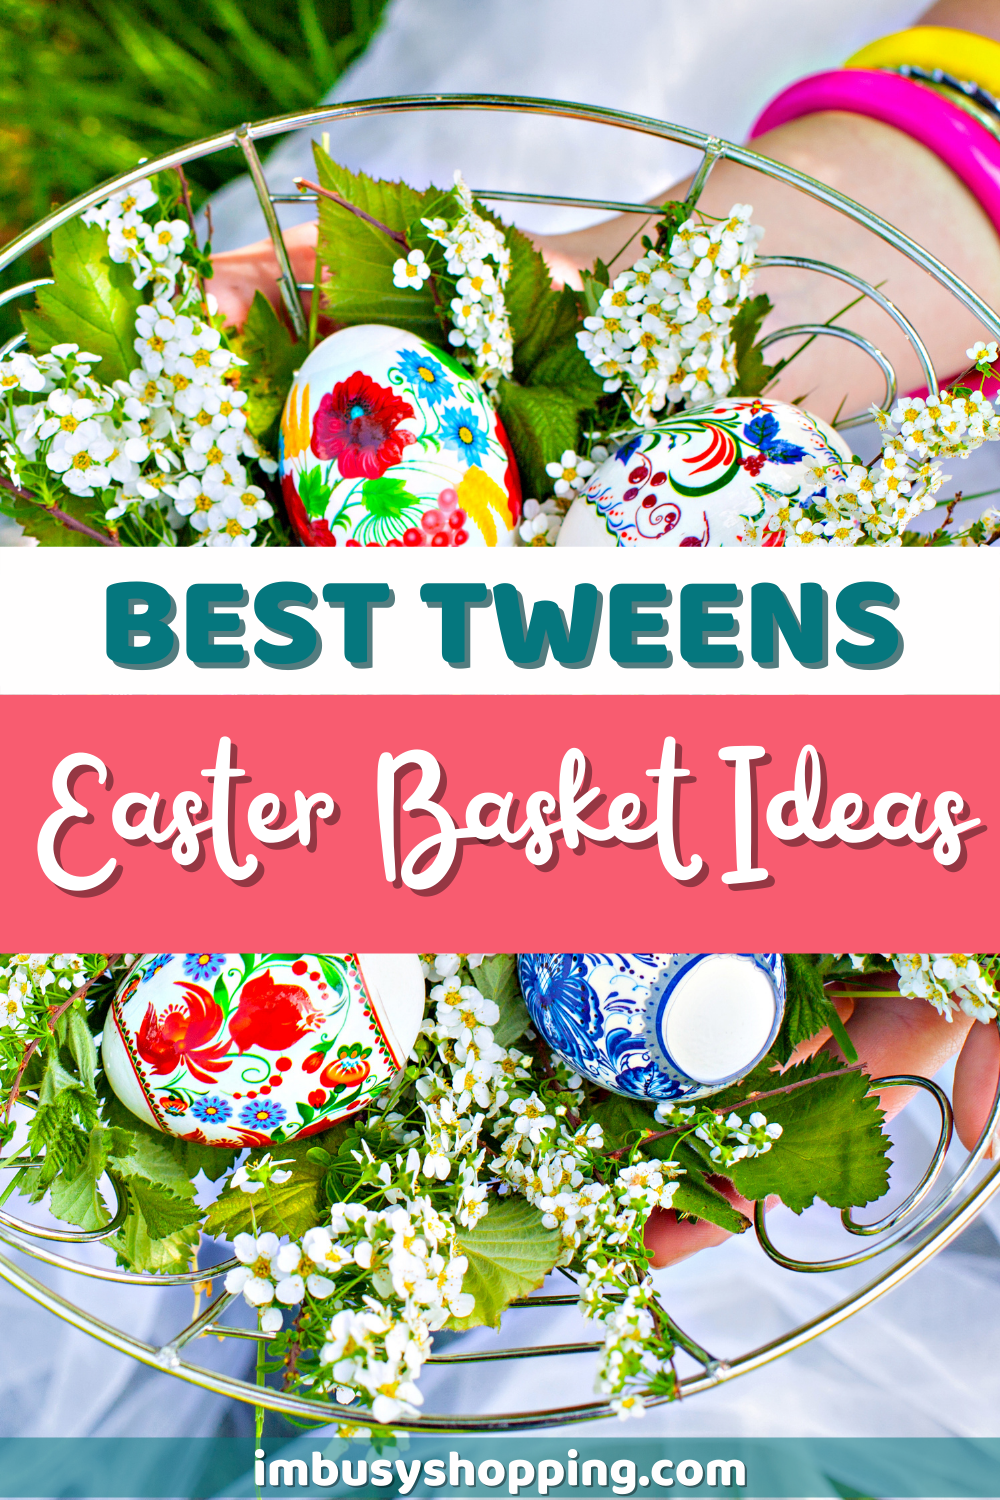 Pin showing Best Tweens Easter Basket Ideas